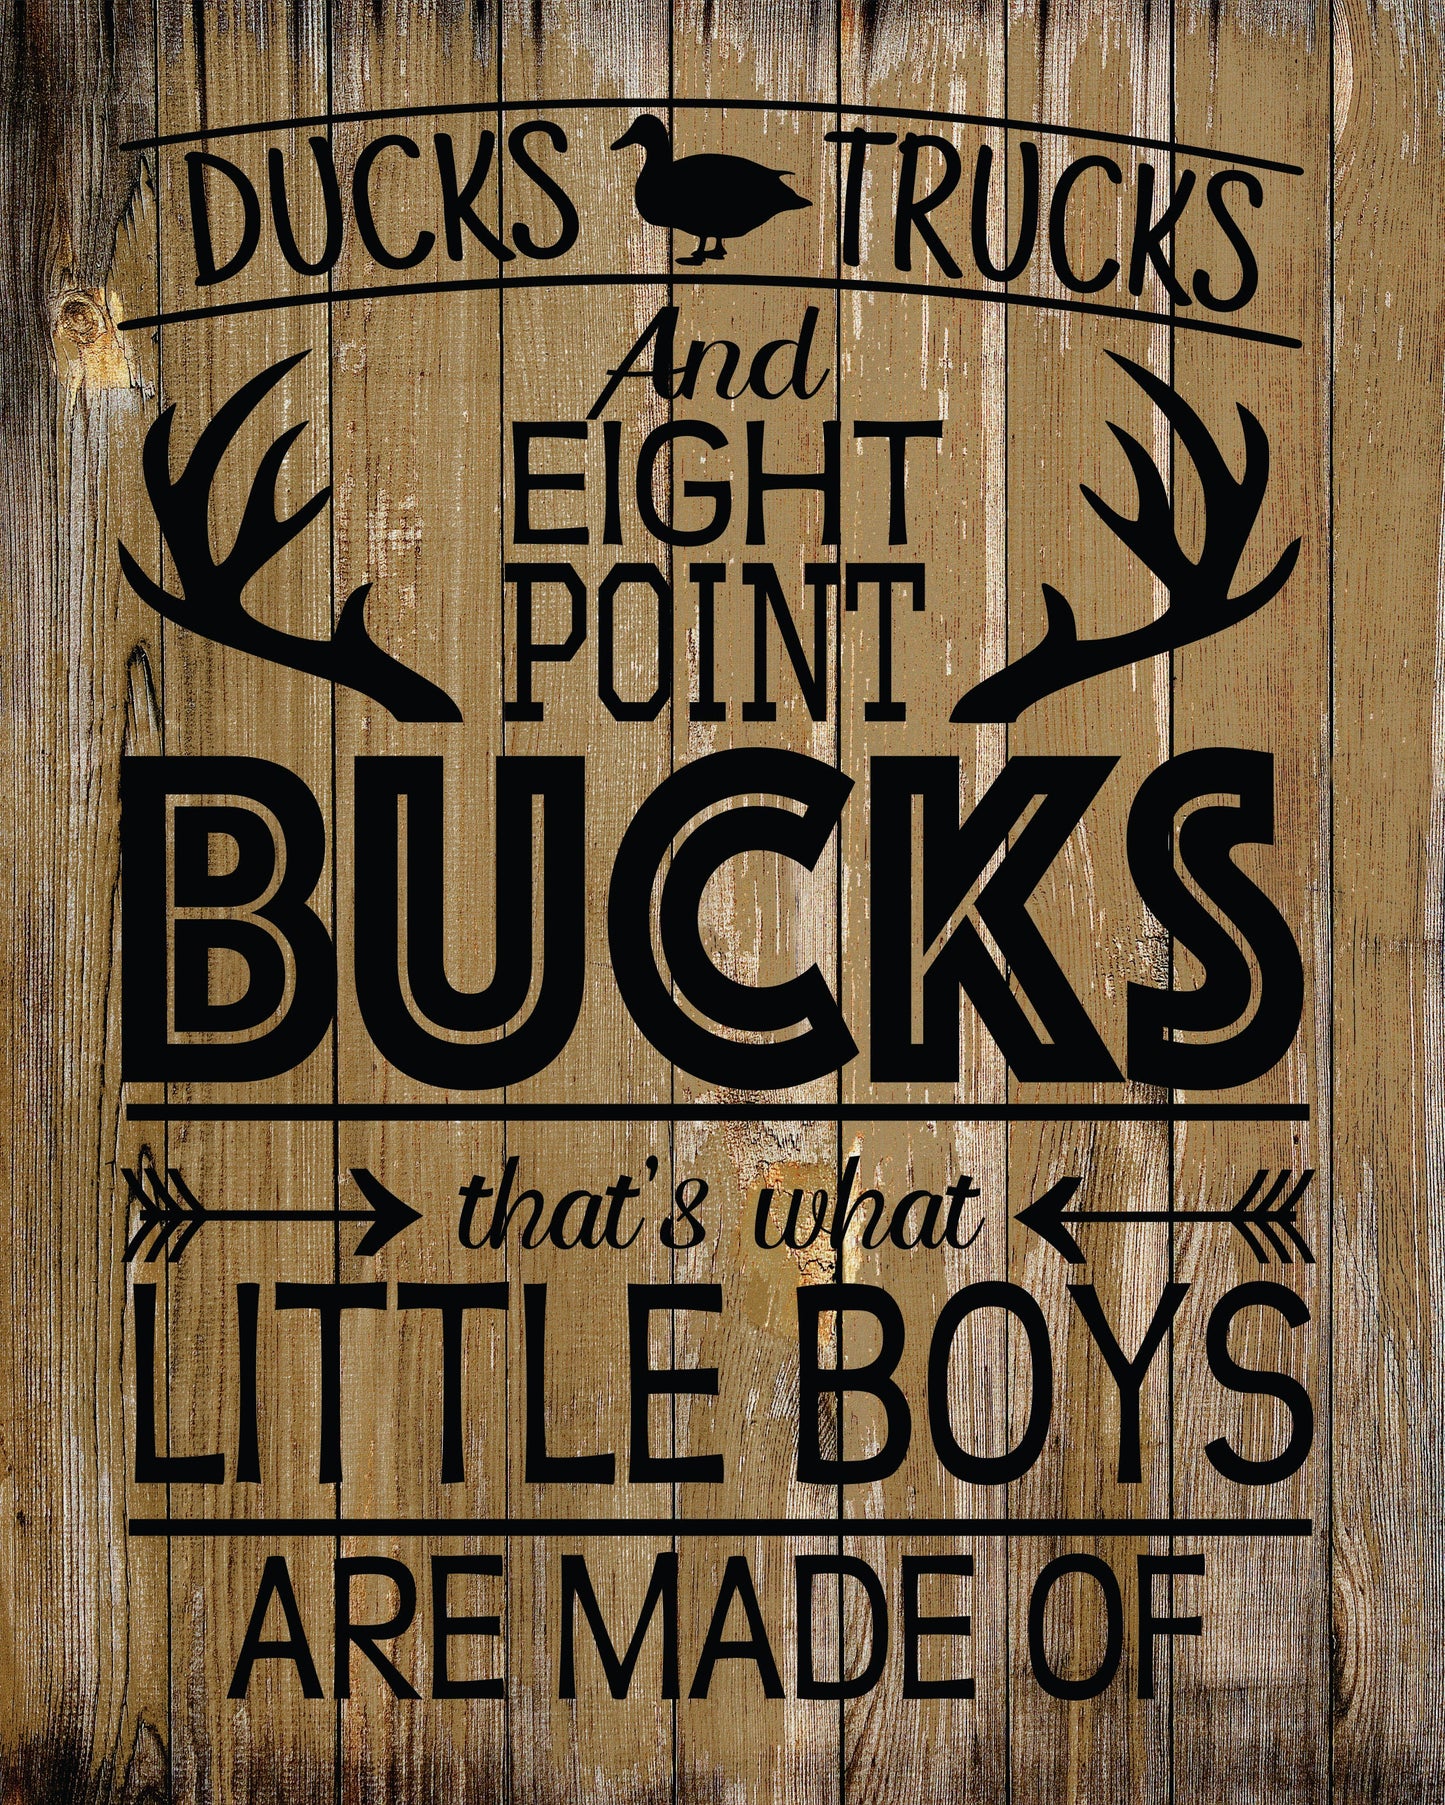 Ducks Trucks and Eight Point Bucks